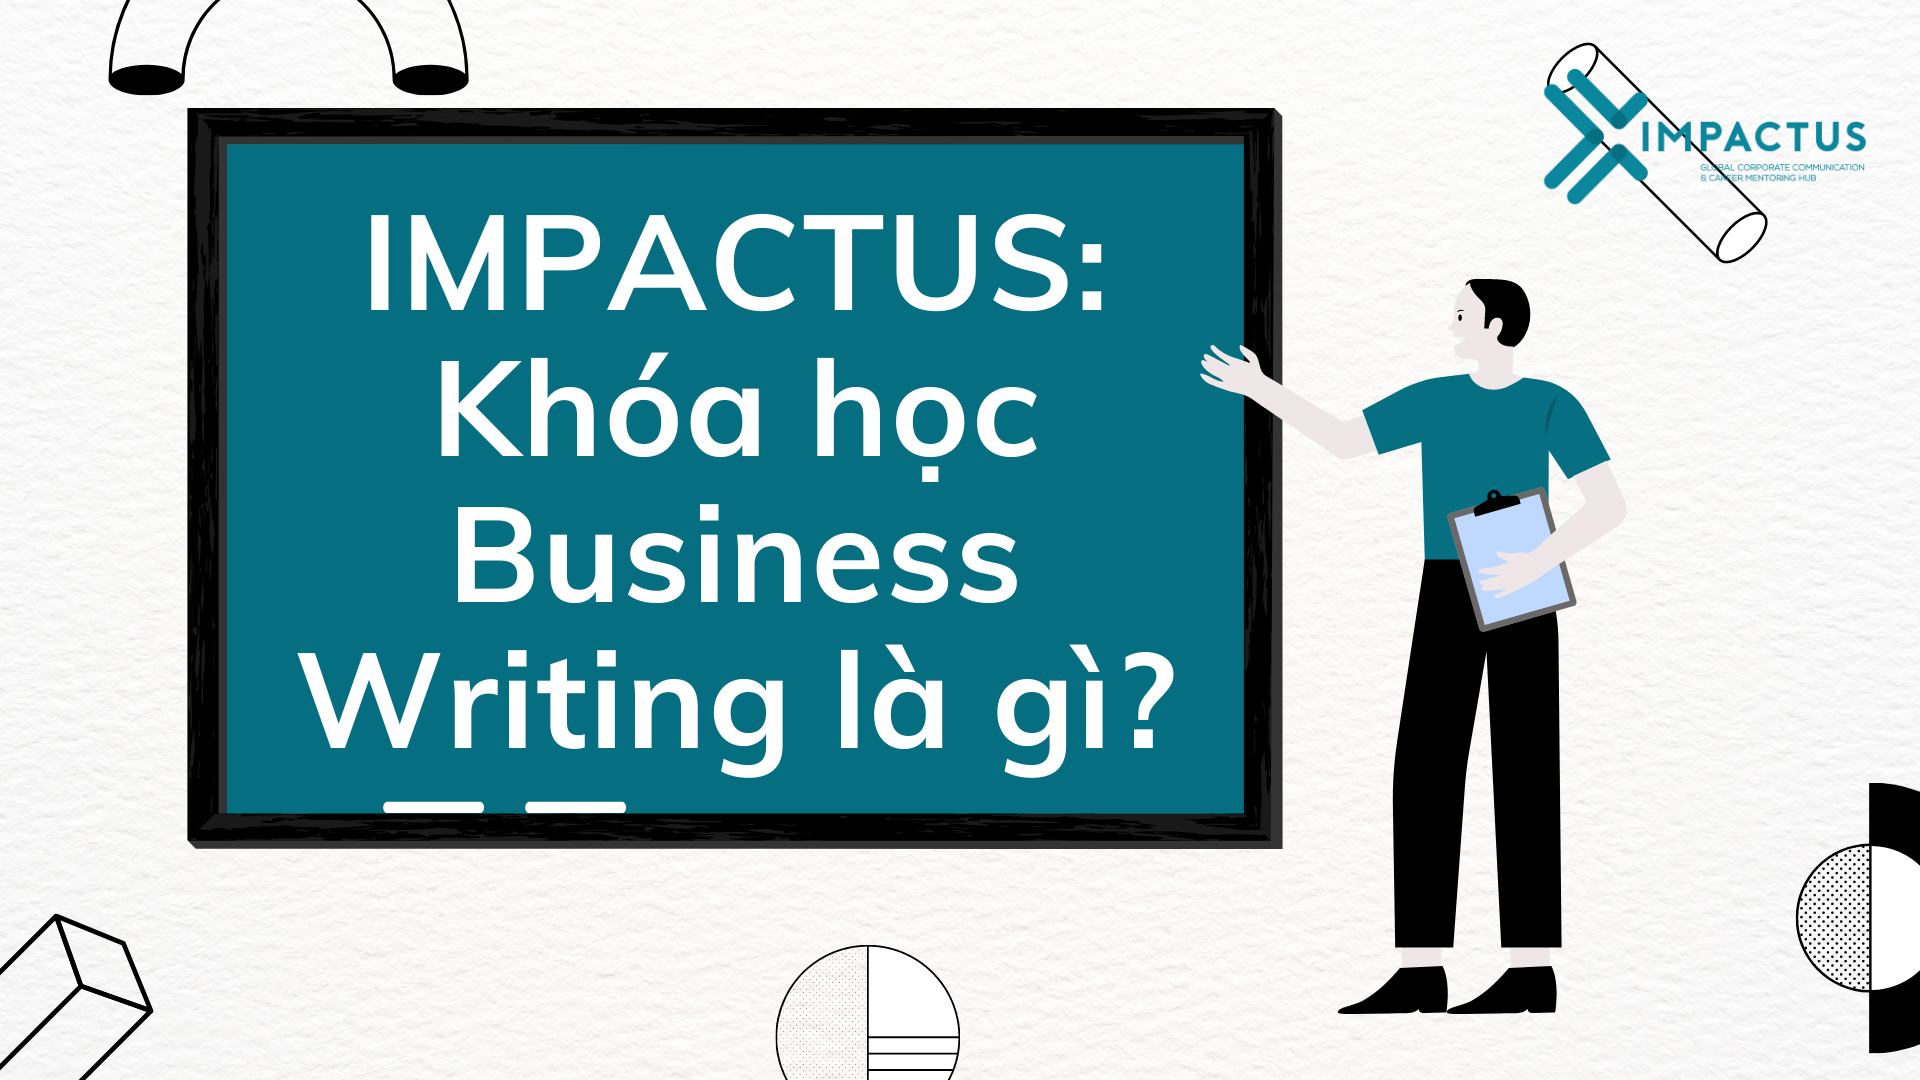 IMPACTUS: Khóa học Business Writing là gì?IMPACTUS: Khóa học Business Writing là gì?